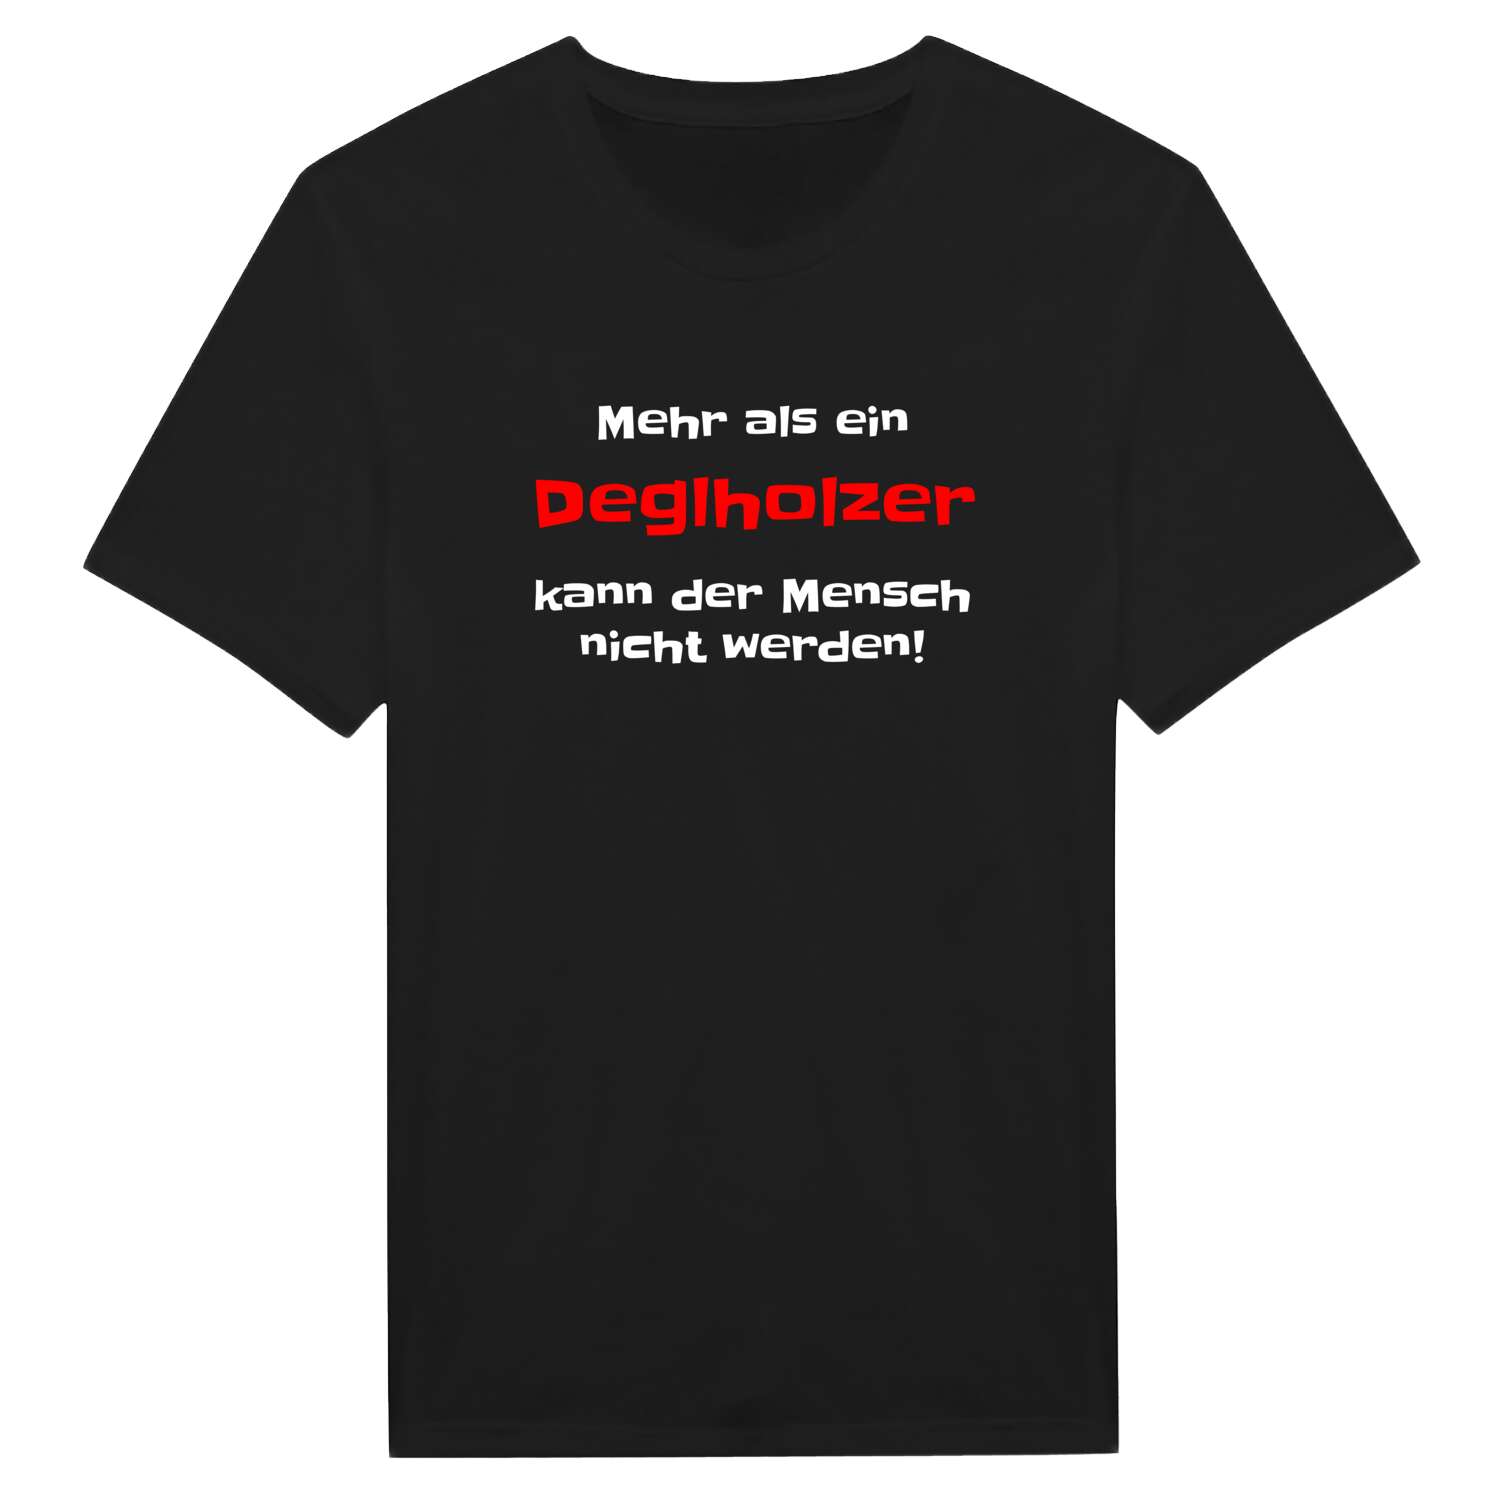 Deglholz T-Shirt »Mehr als ein«